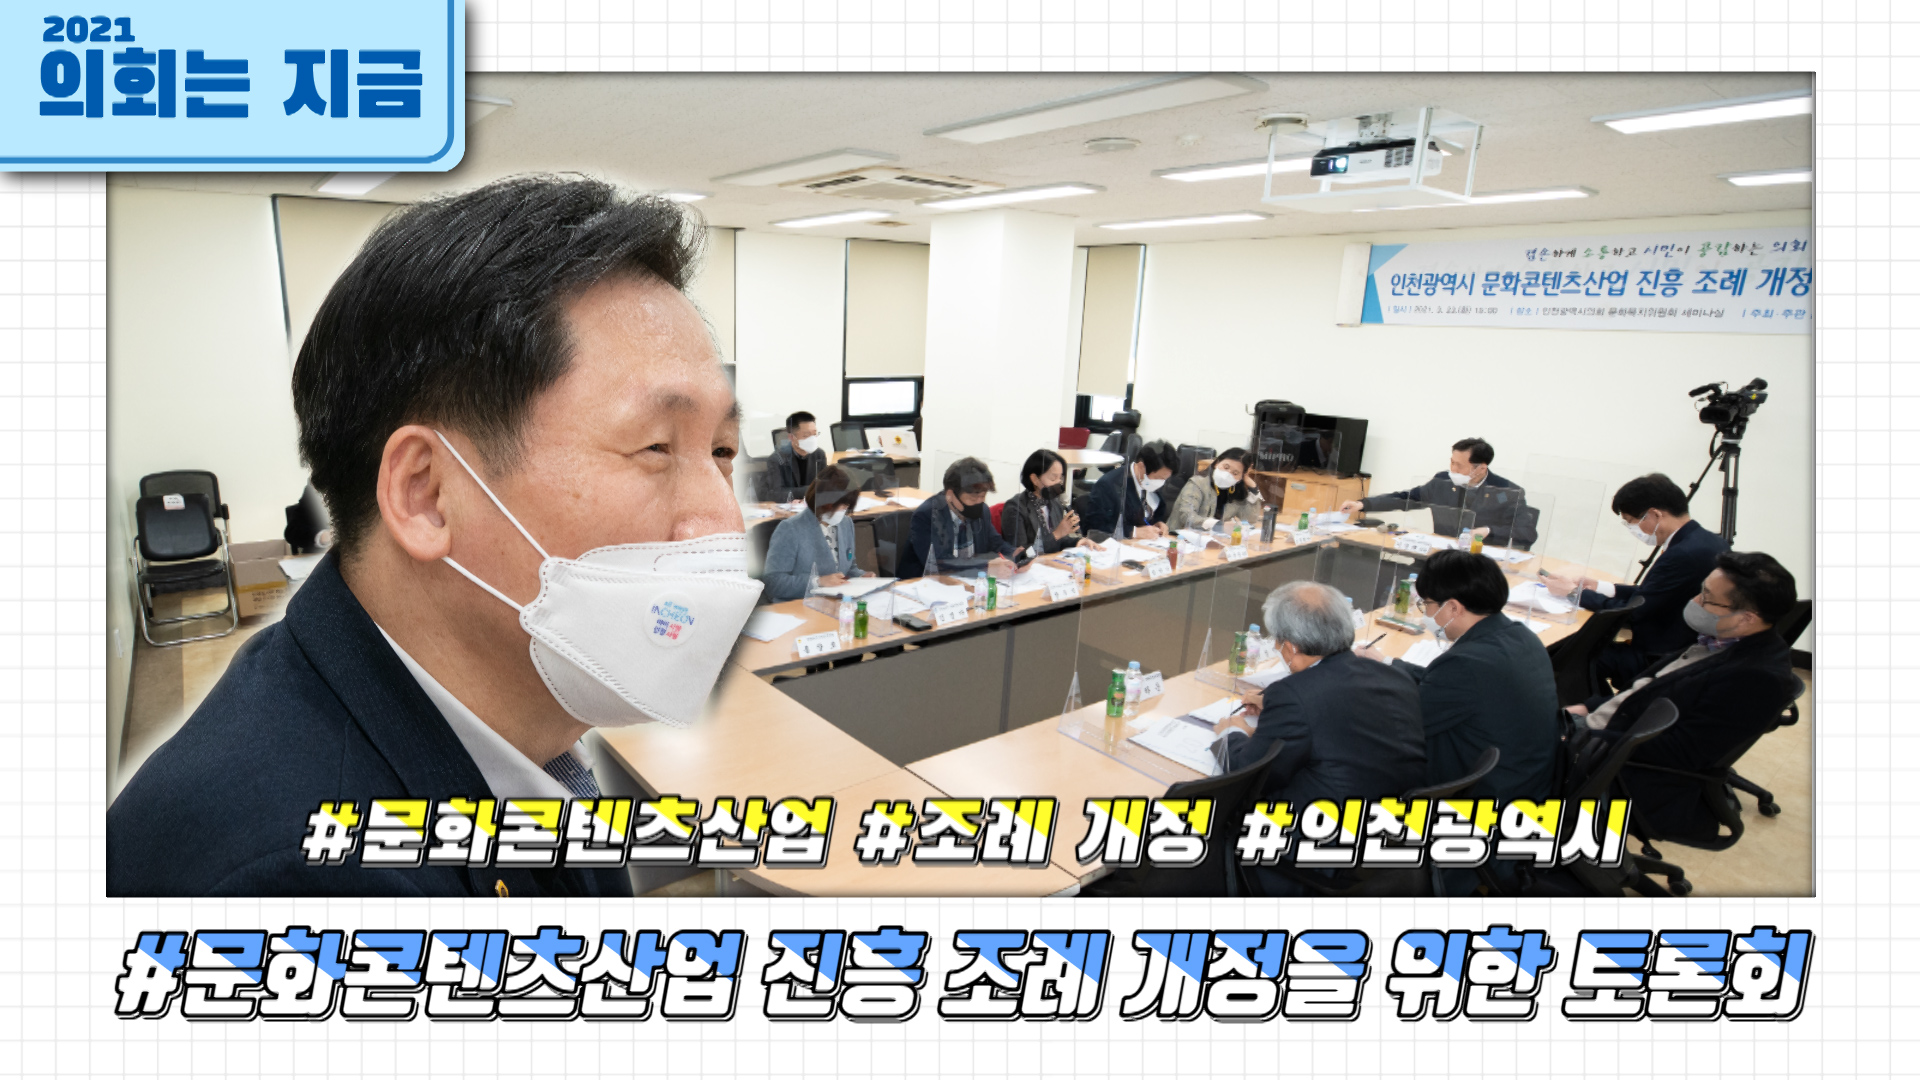 인천광역시 문화콘텐츠산업 진흥 조례 개정을 위한 토론회 사진